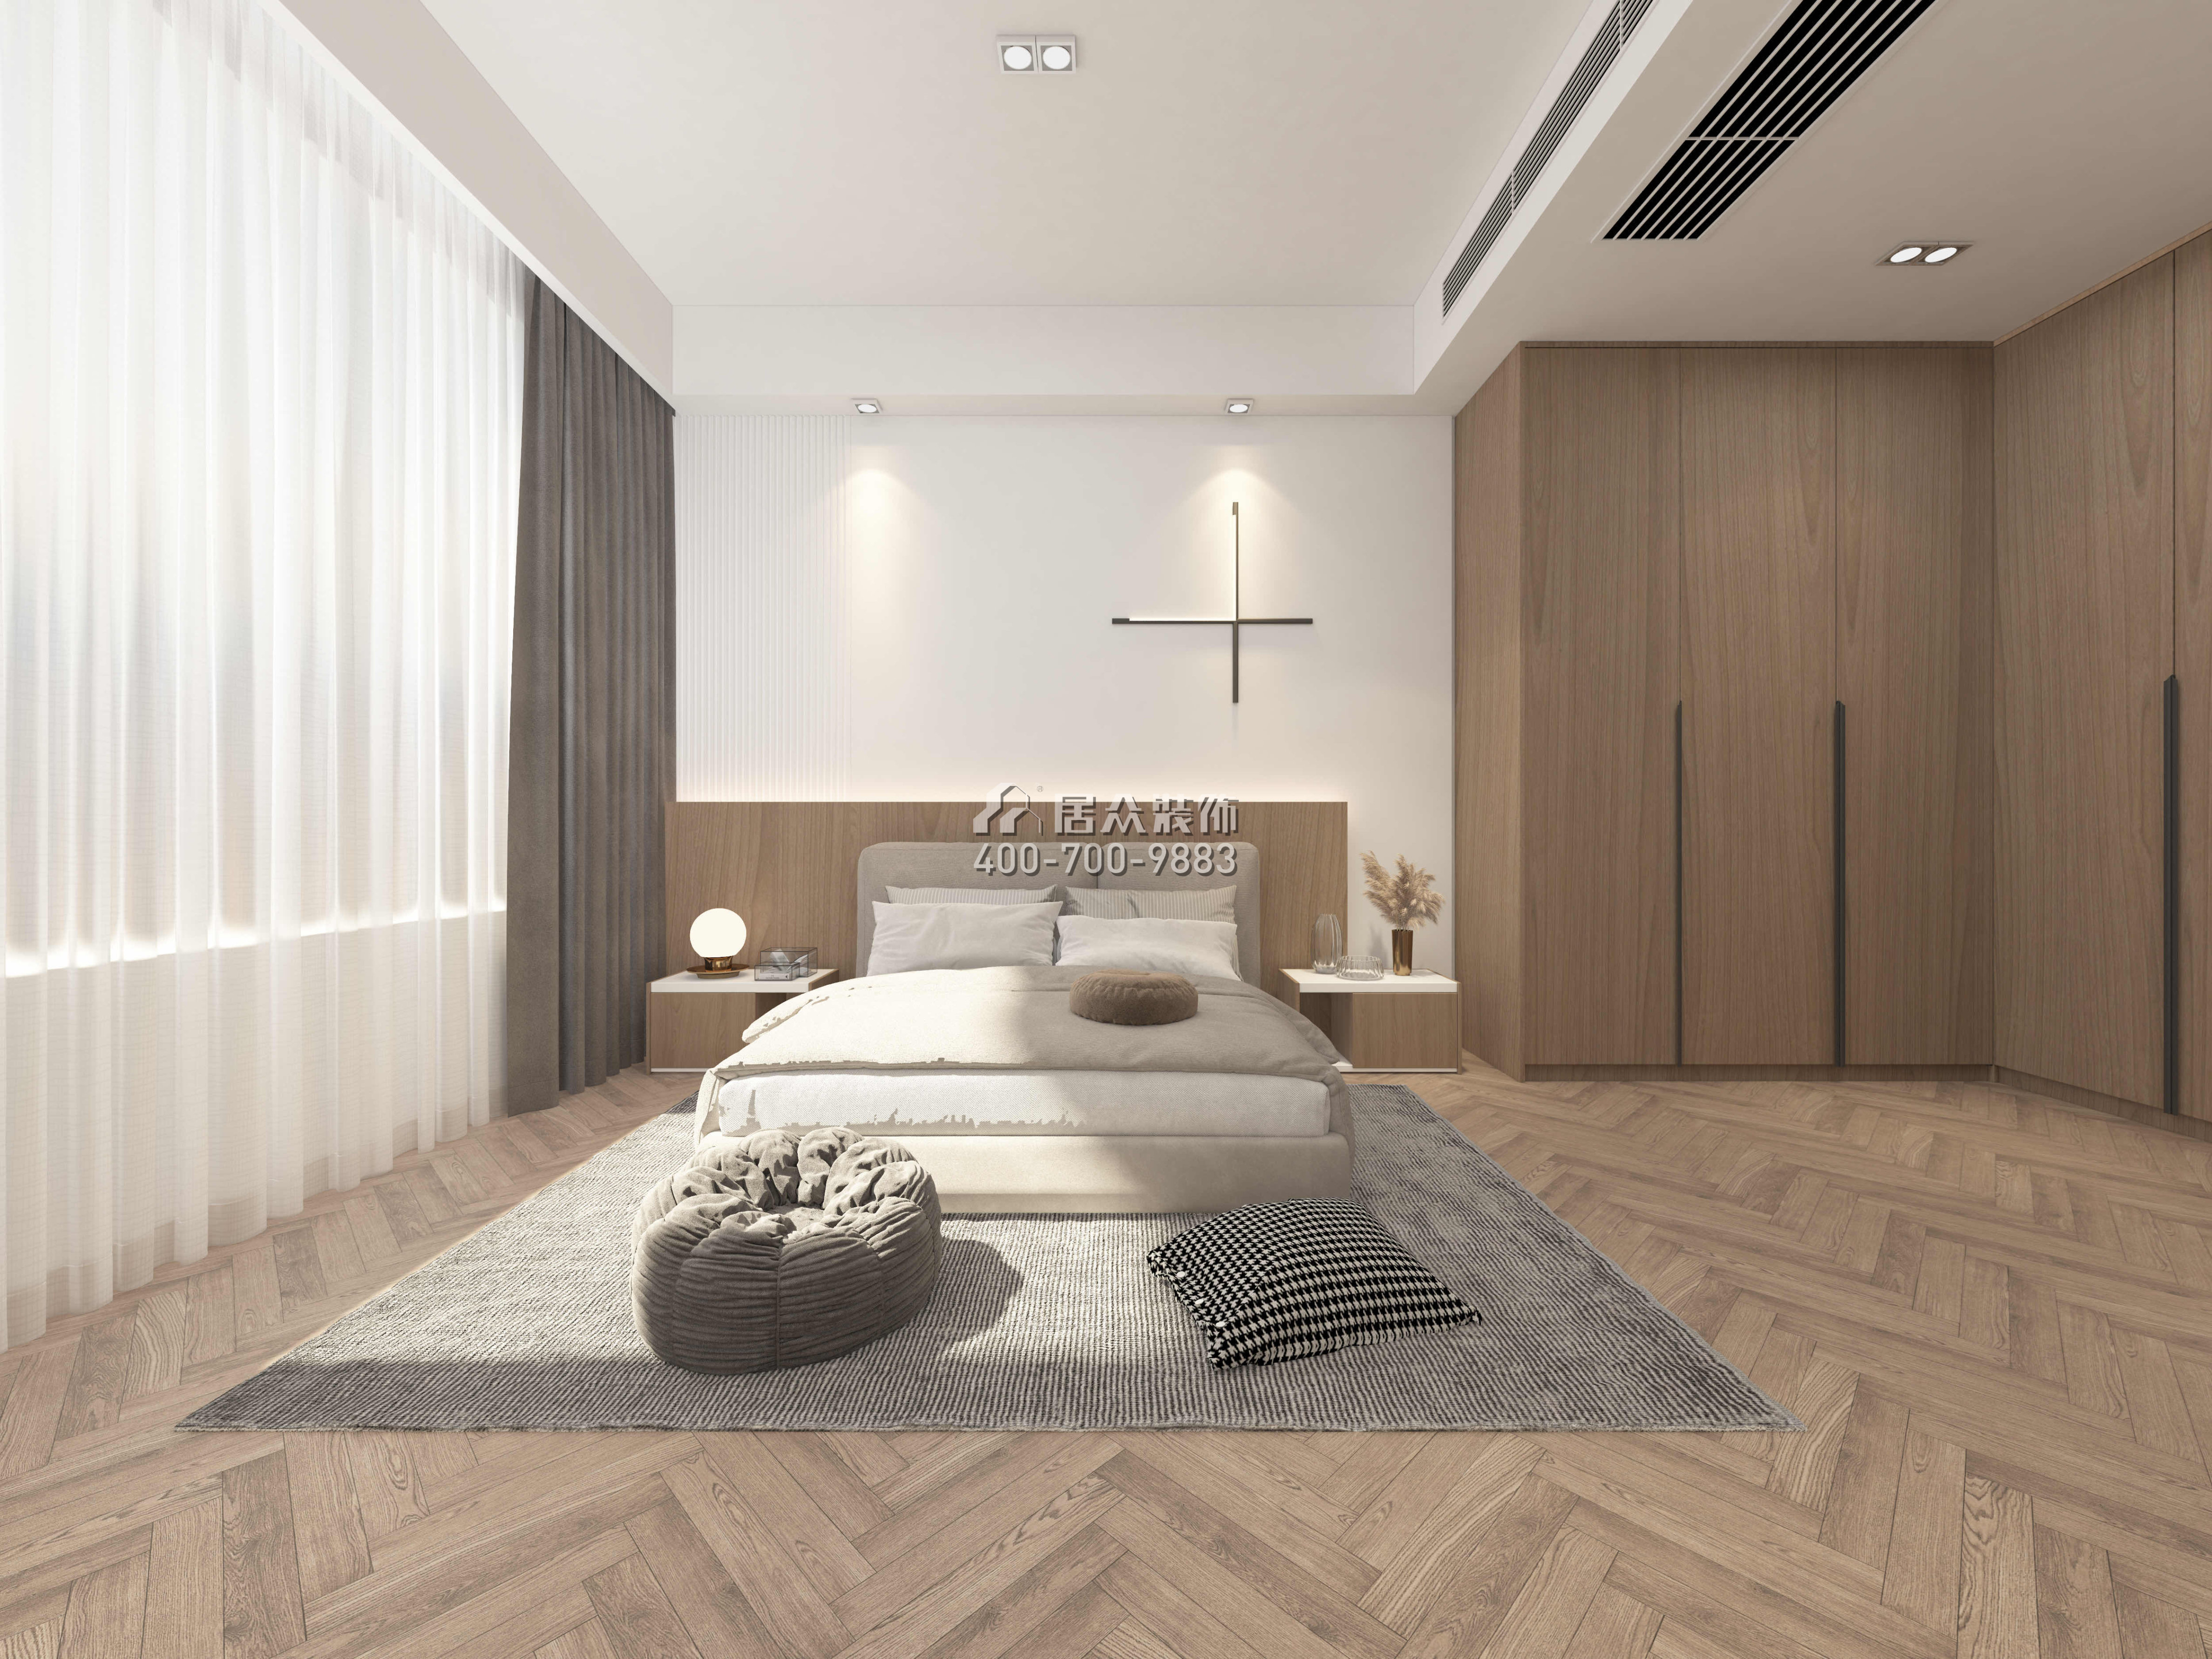 香江悦府160平方米现代简约风格平层户型卧室装修效果图